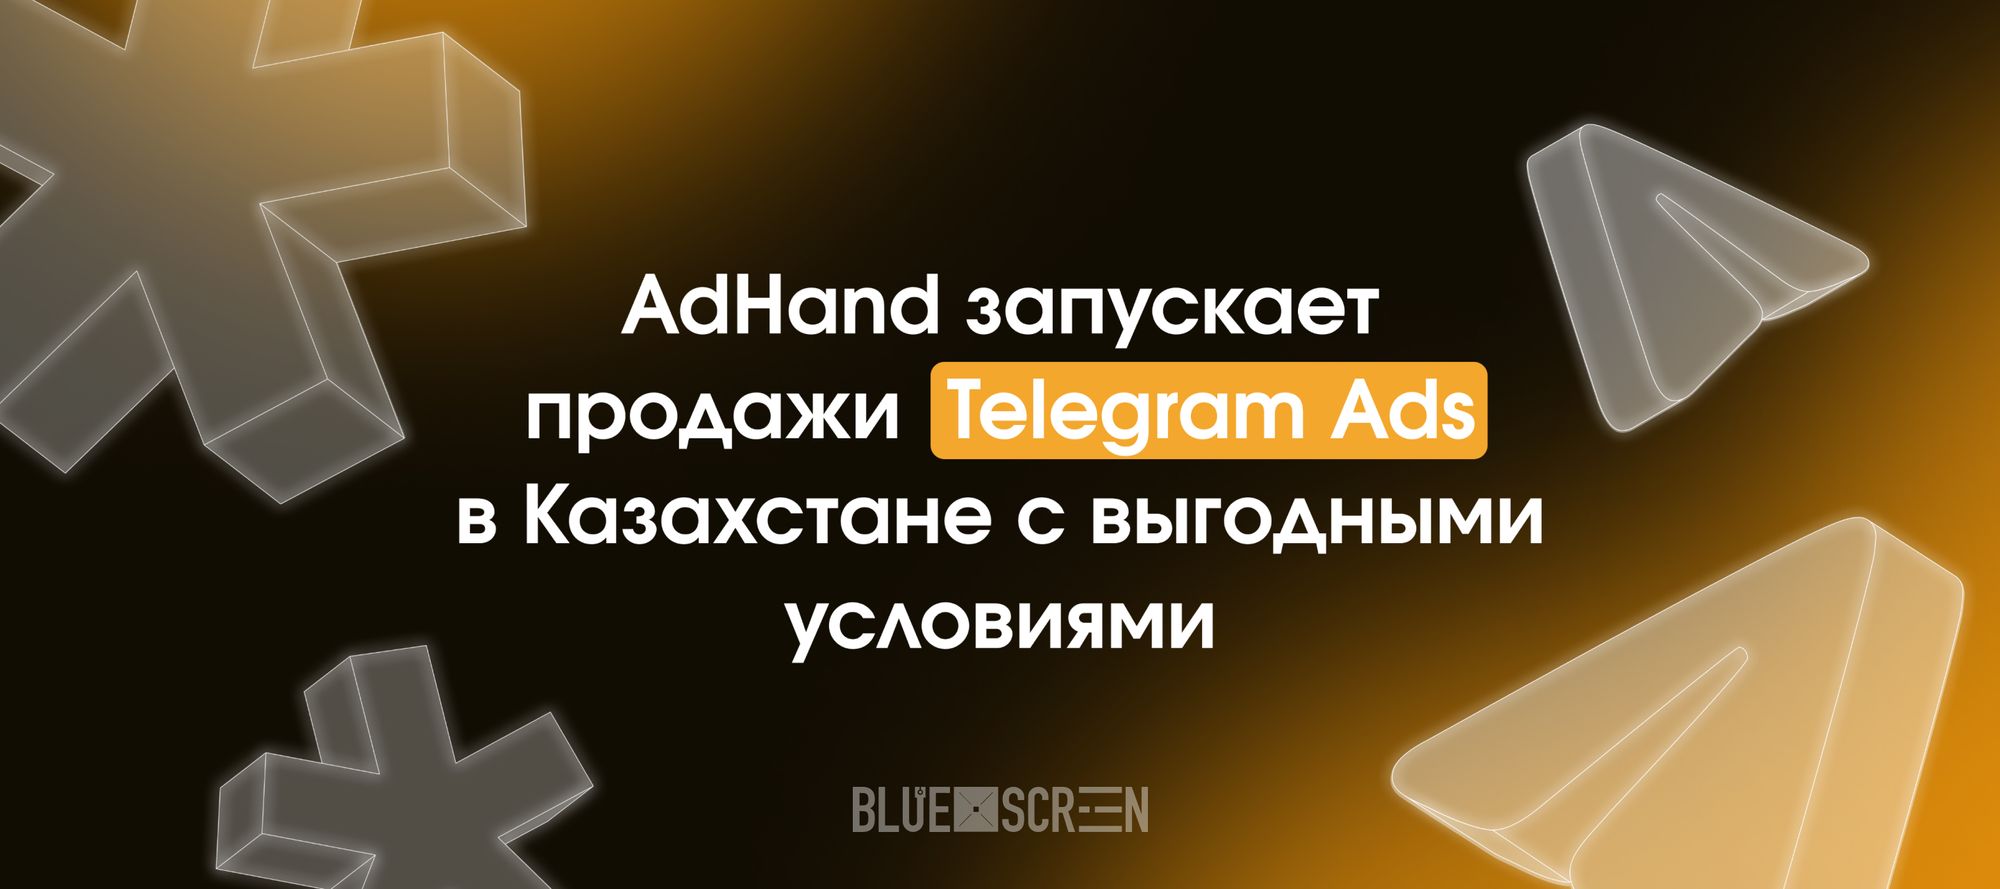 AdHand запускает продажи Telegram Ads в Казахстане с выгодными условиями